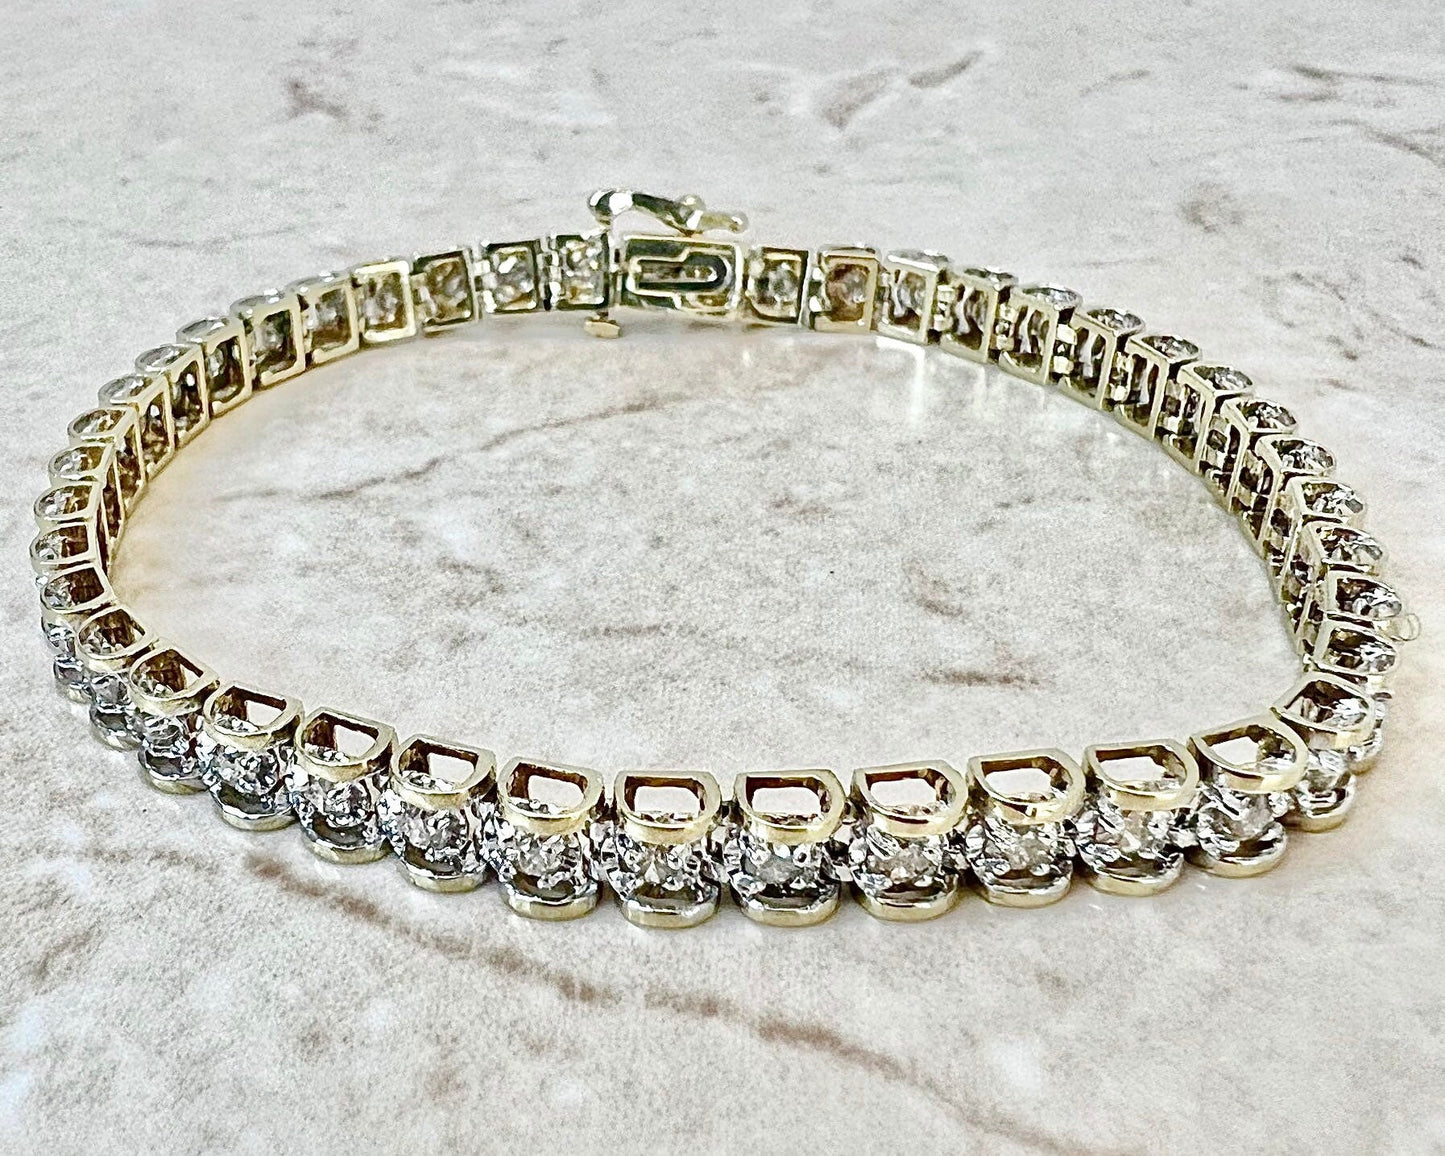 Vintage 10K Diamond Tennis Bracelet 2 CTTW - Two Tone Gold Tennis Bracelet - Diamond Link Bracelet - Birthday Gift - Best Gift For Her